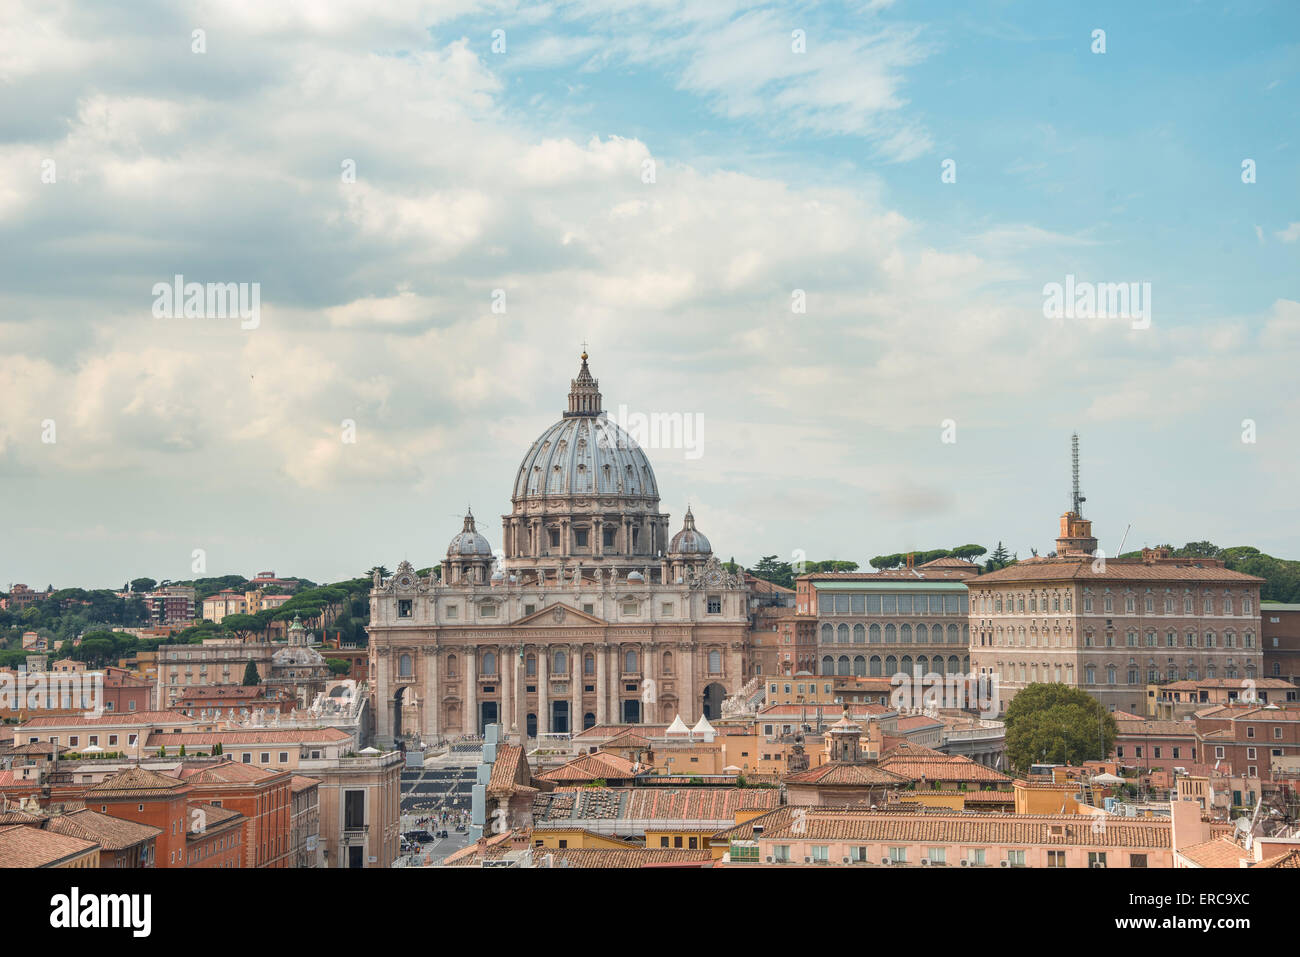 La Basílica de San Pedro y los Museos del Vaticano, Ciudad del Vaticano, Roma, Lazio, Italia Foto de stock